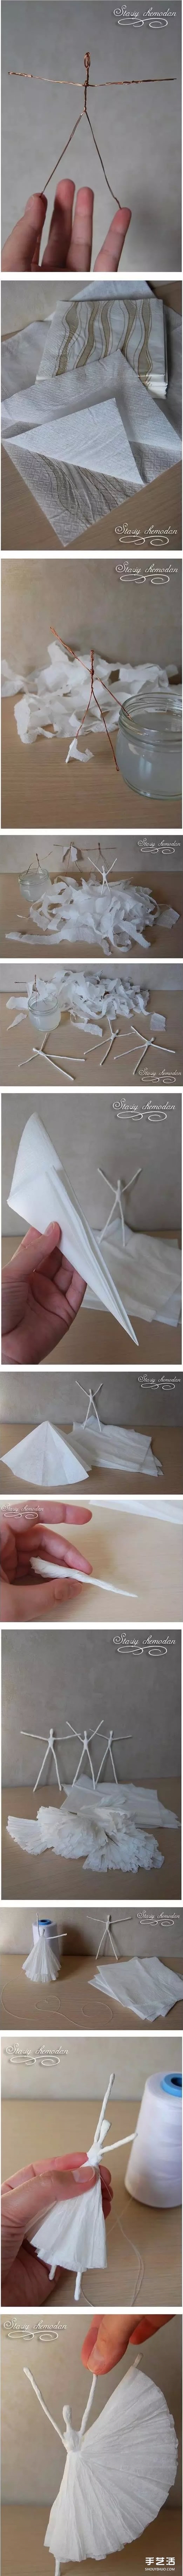 如何用餐巾纸折纸小人 纸巾折芭蕾舞演员的方法